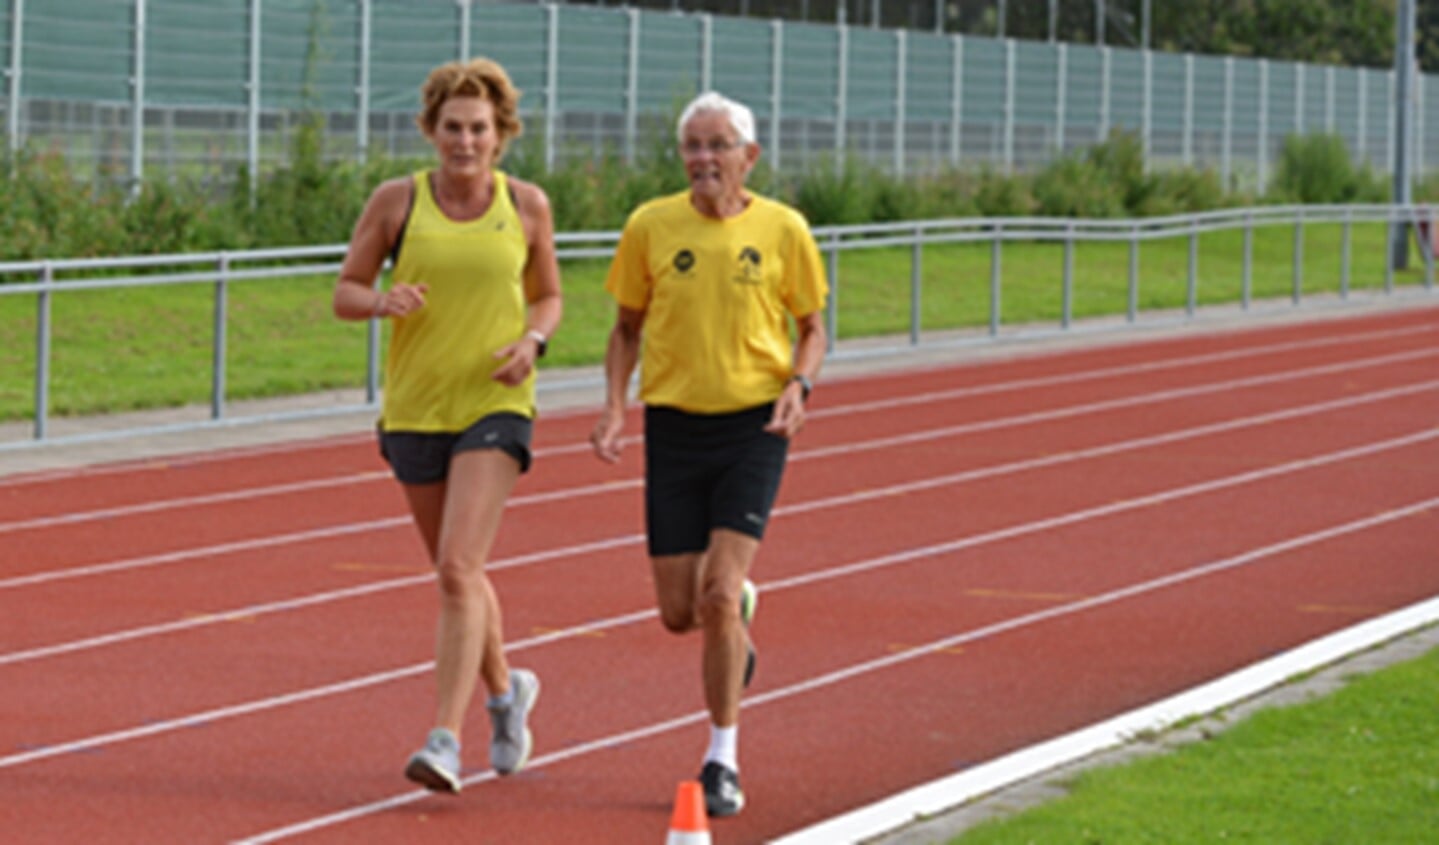 De atlete Stella Jongmans heeft aan het begin van haar carrière getraind onder Sijbrandij en liep een rondje mee (foto: pr).